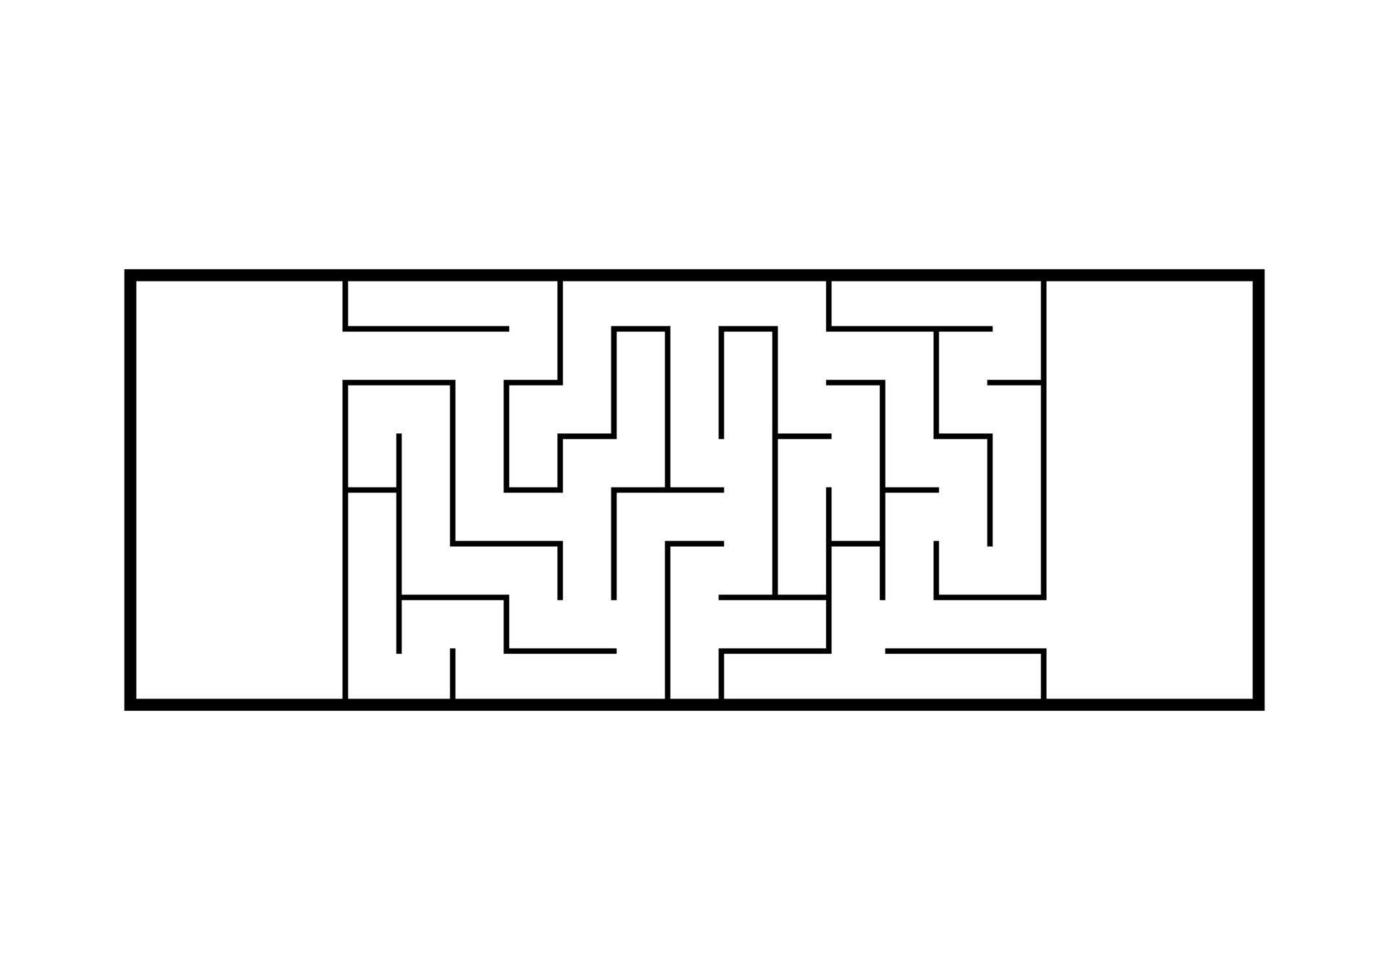 labirinto abstact. jogo para crianças. quebra-cabeça para crianças. enigma do labirinto. ilustração vetorial. vetor